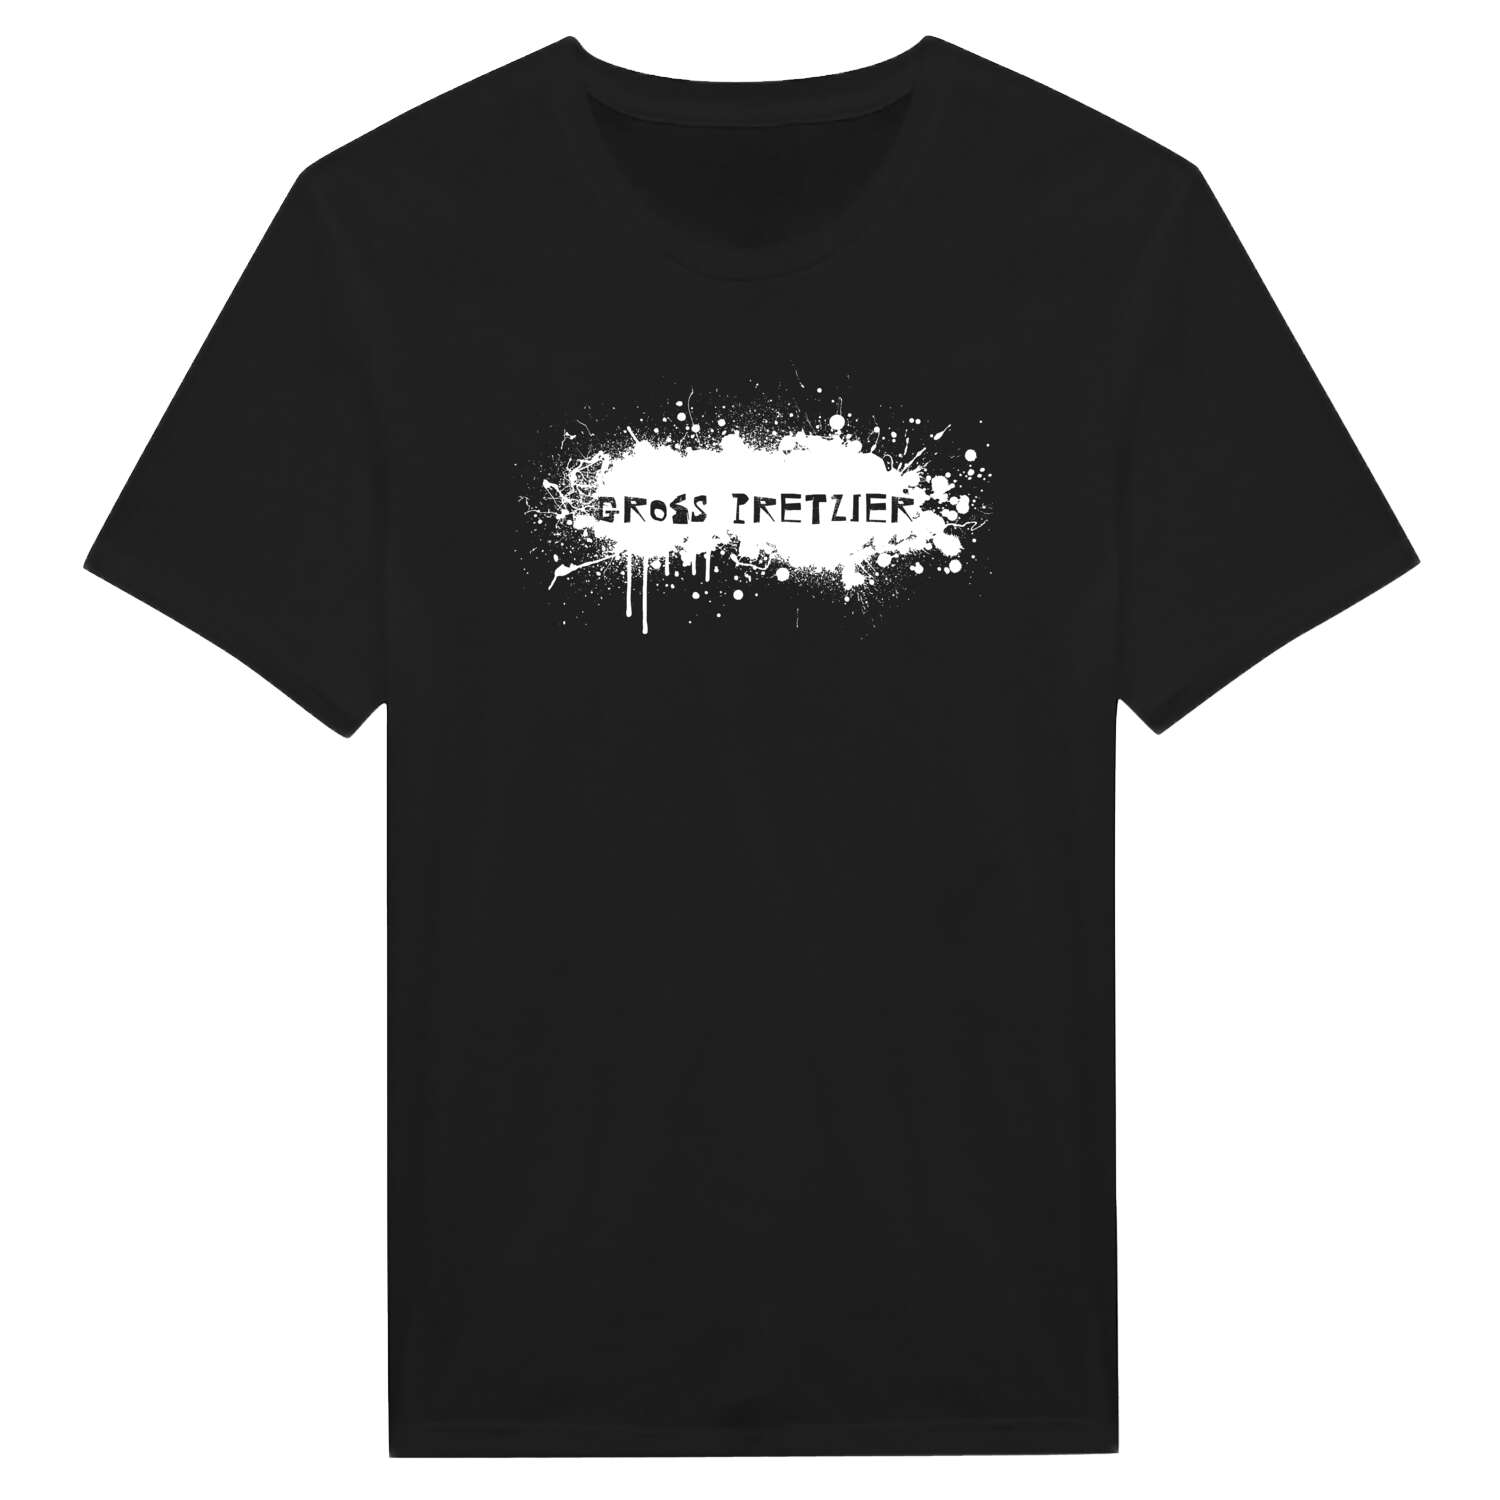 Groß Pretzier T-Shirt »Paint Splash Punk«